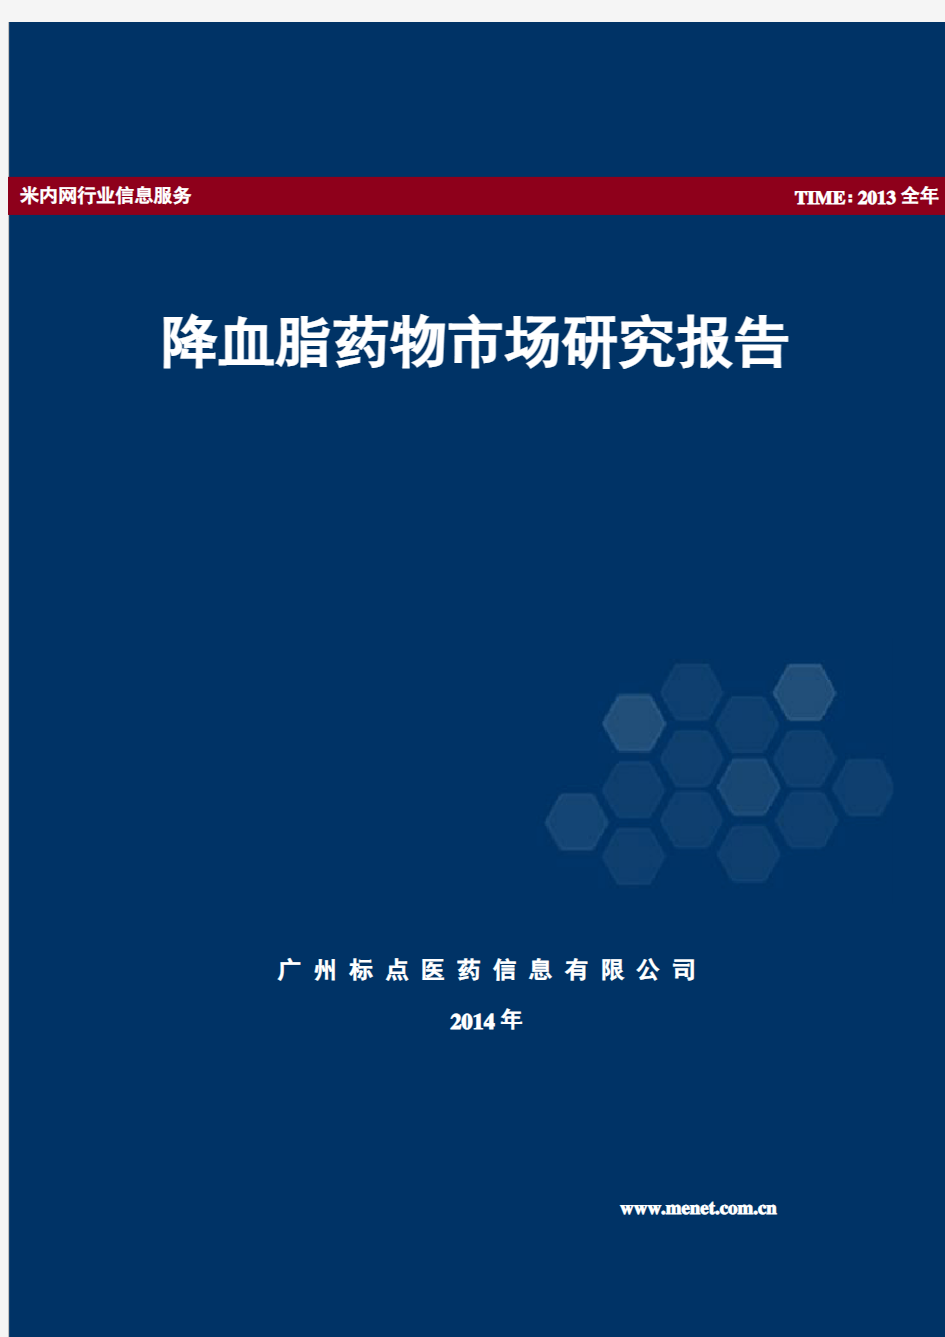 降血脂药市场研究报告(2014年版)